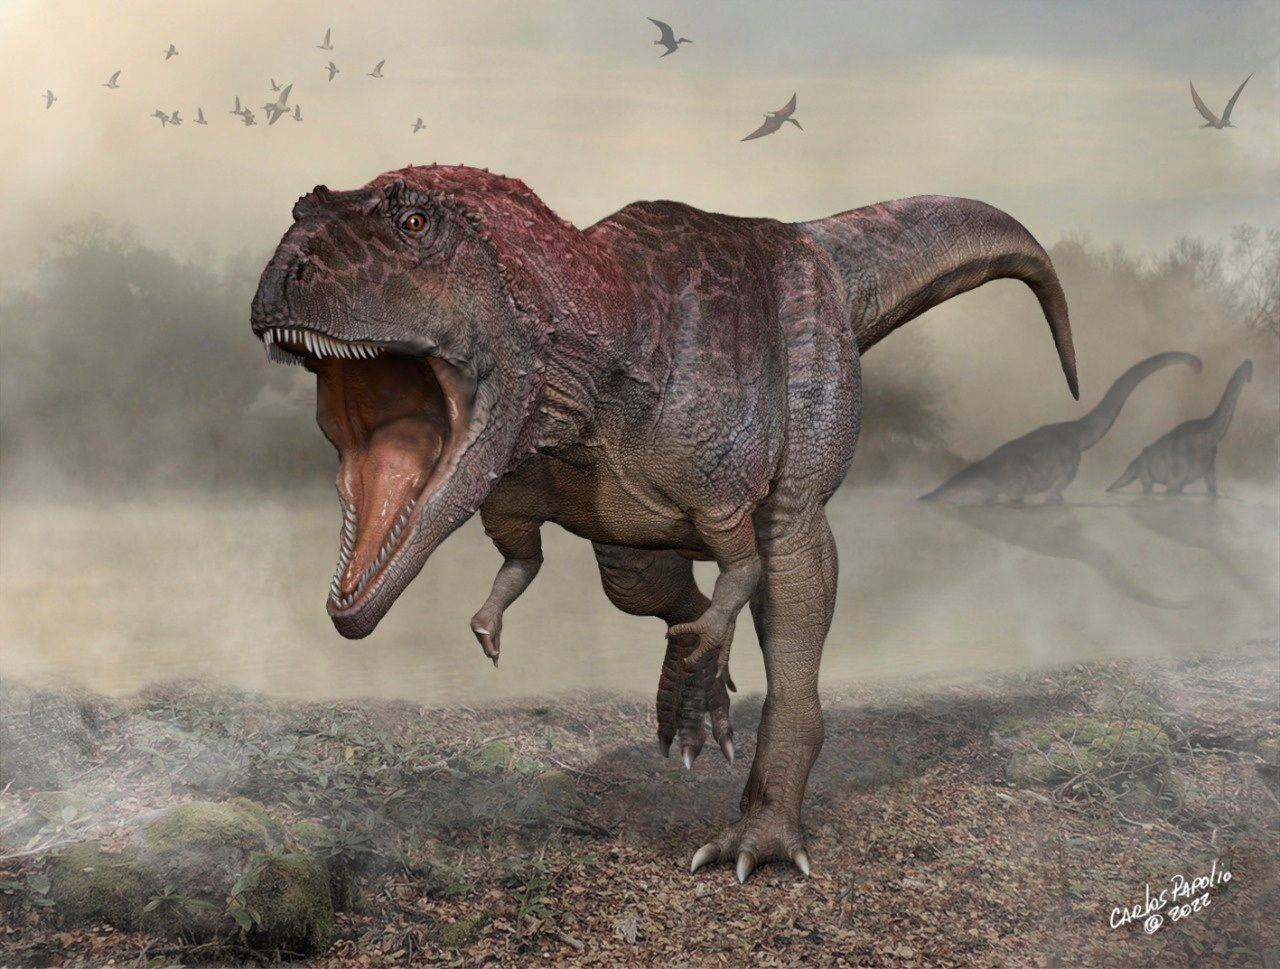 En la misma zona de la Patagonia argentina, los científicos habían encontrado los restos de un dinosaurio carnívoro gigante, que llamaron Meraxes gigas (Carlos Papolio)